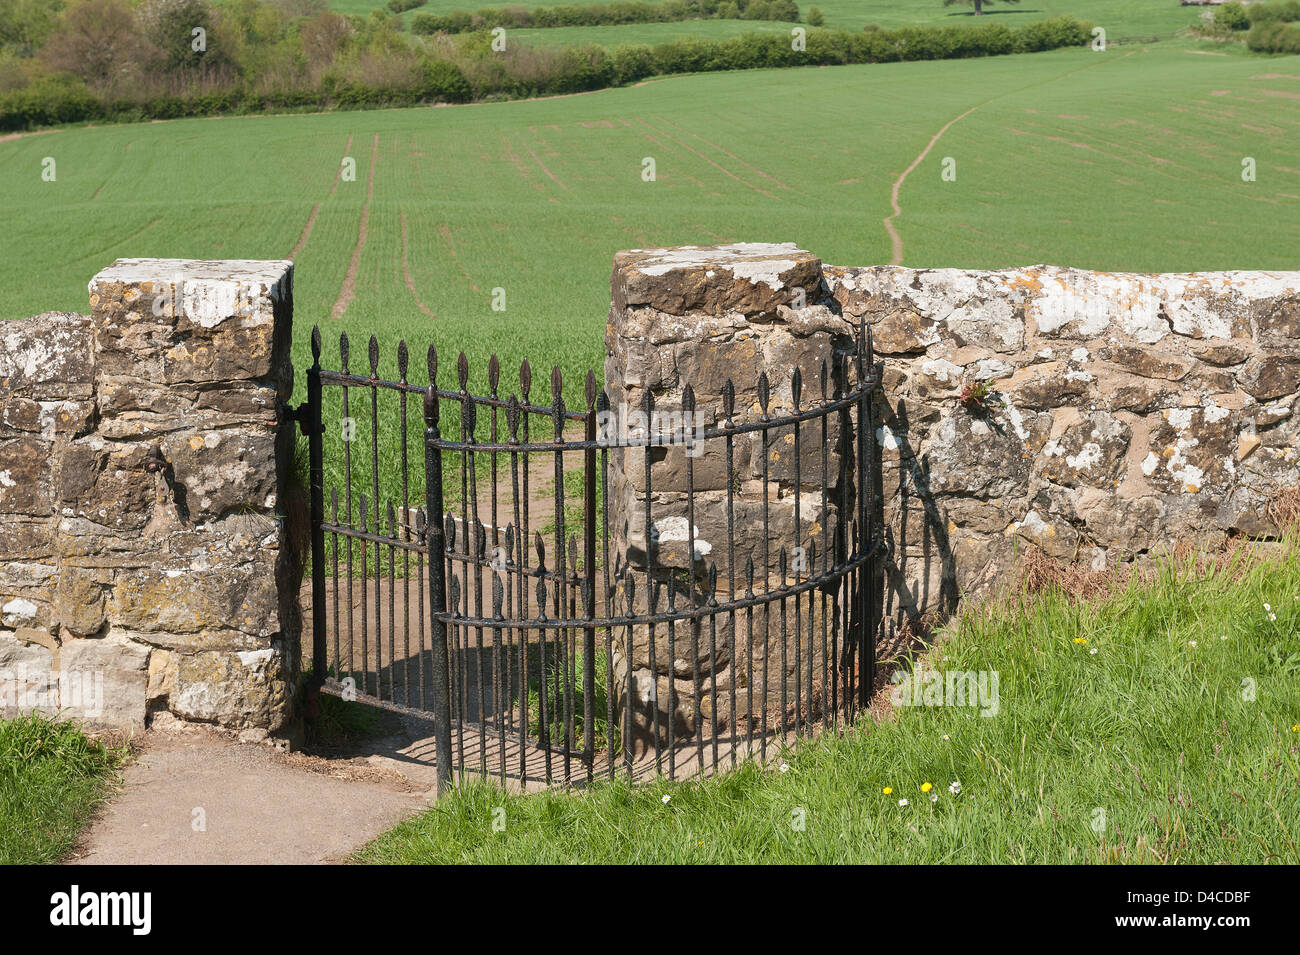 La porte en fer forgé s'embrasser et kent ragstone mur menant vers l'ensemble de sentier domaine de la campagne de récolte de blé ceinture verte Banque D'Images